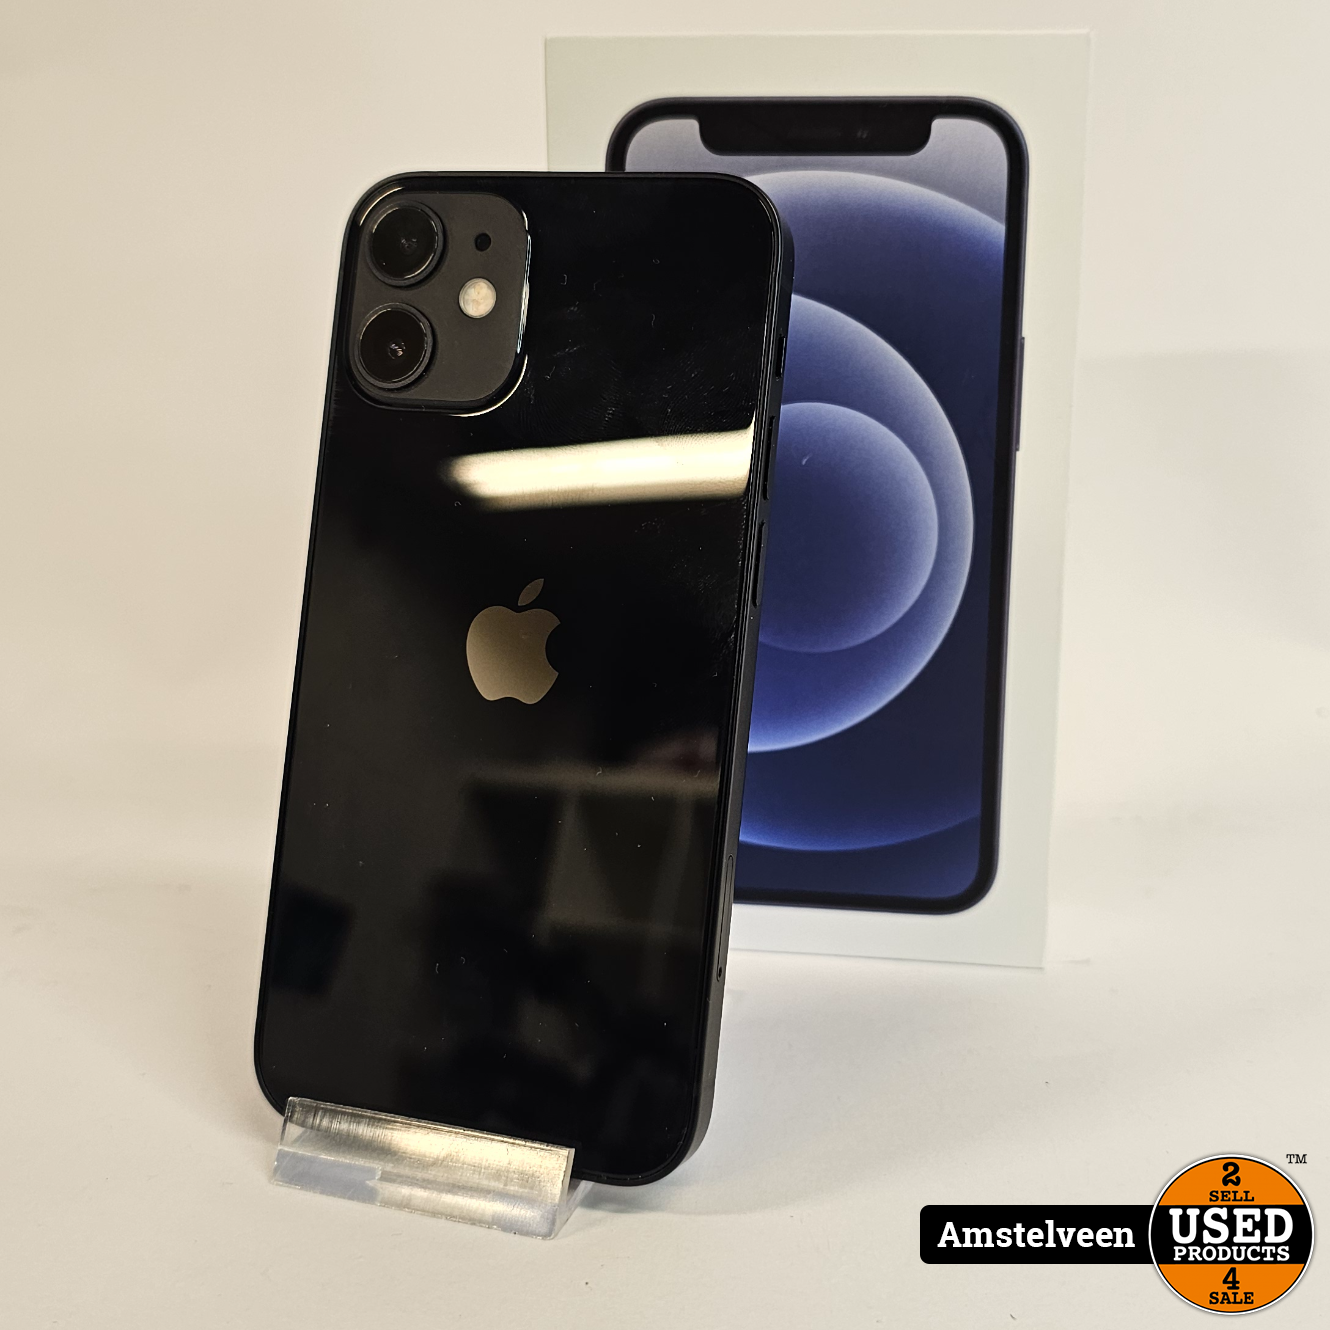 Apple iPhone 12 Mini 128GB Black | Nette Staat - Used Products Amstelveen